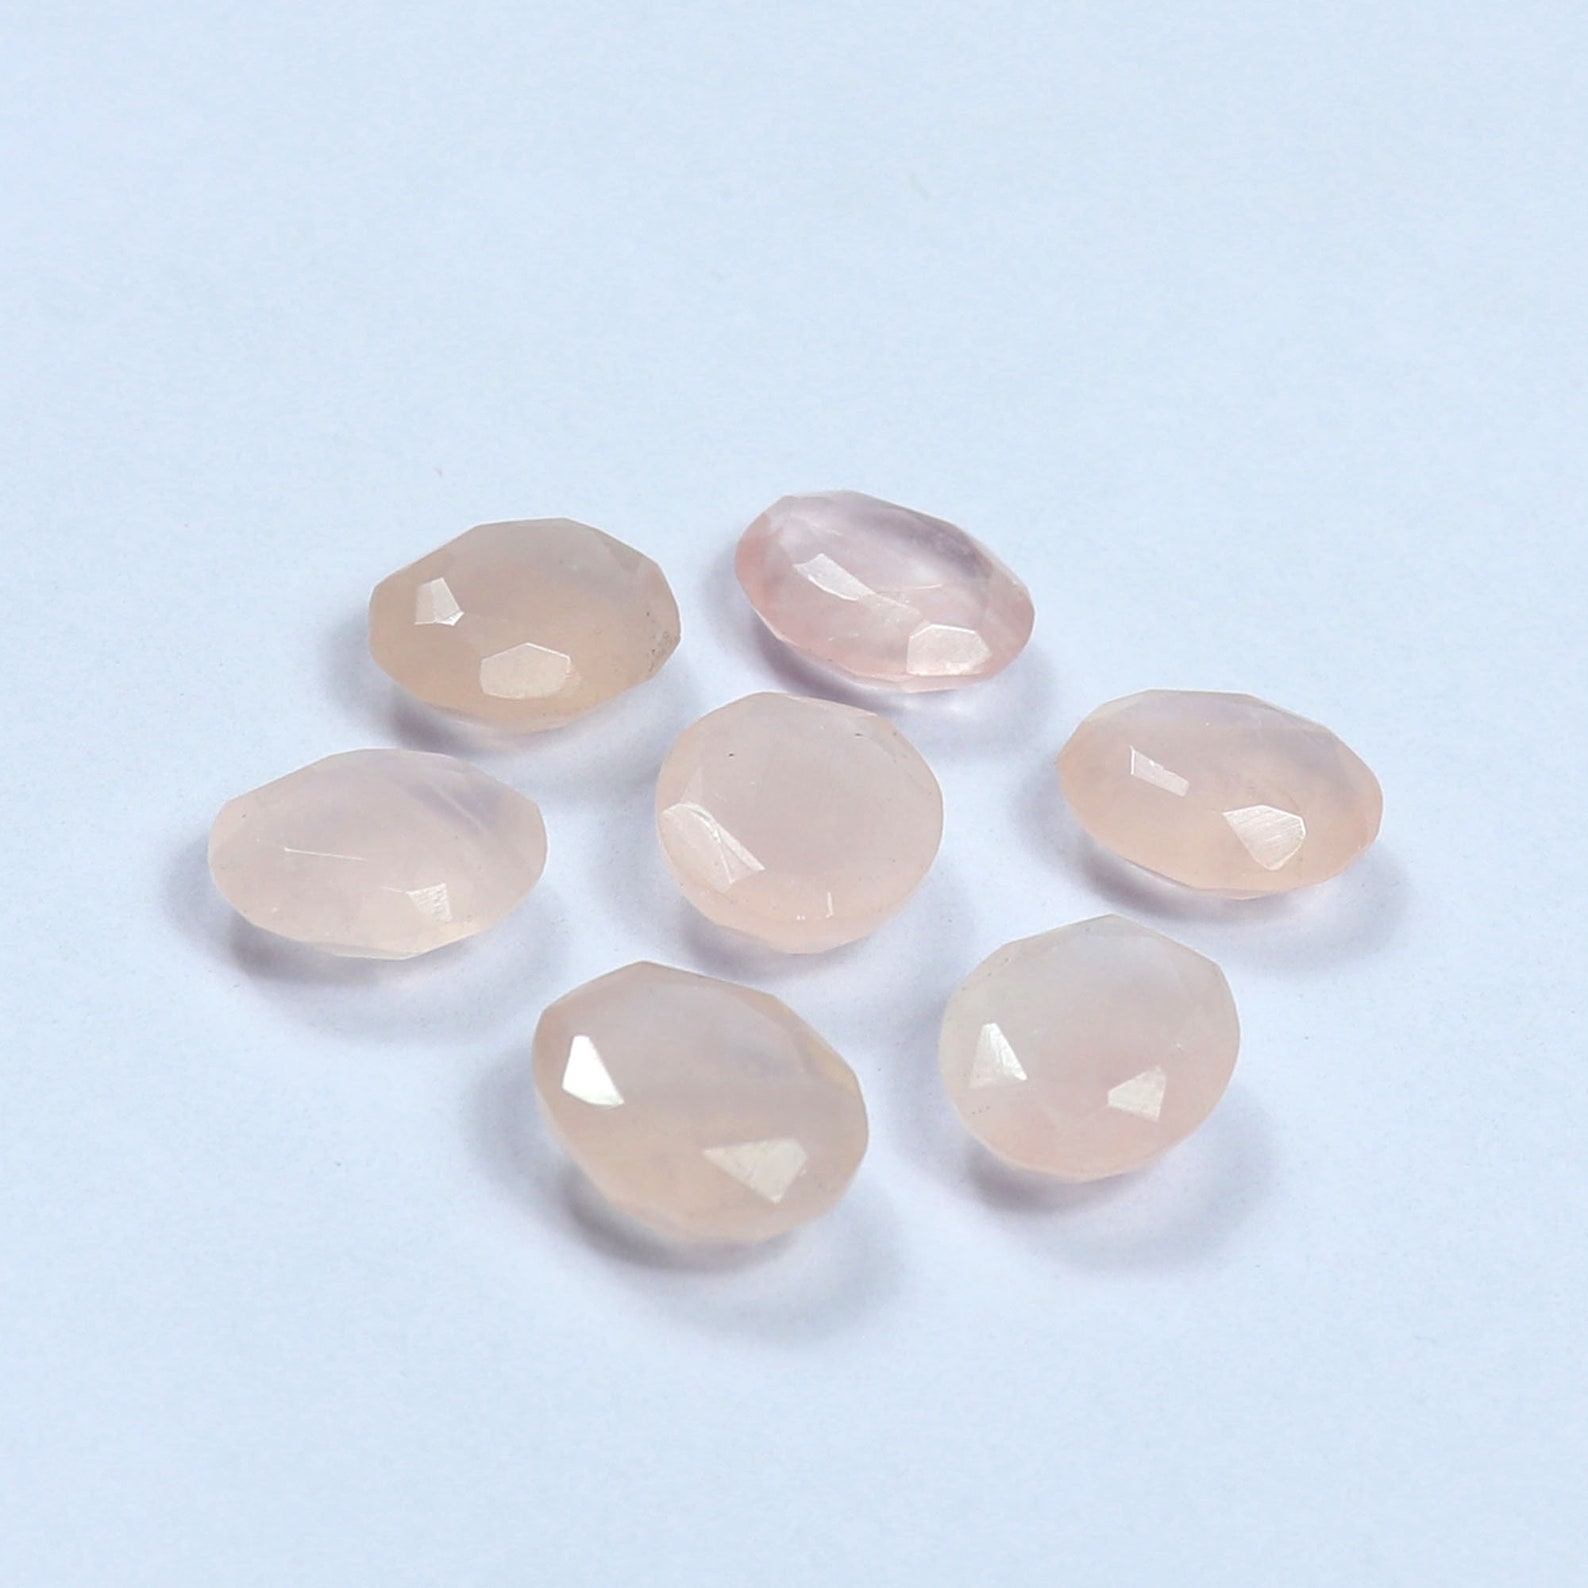 Rose Quartz Cut Gemstone 7Pcs Amazing Quality Oval Shape | Etsy